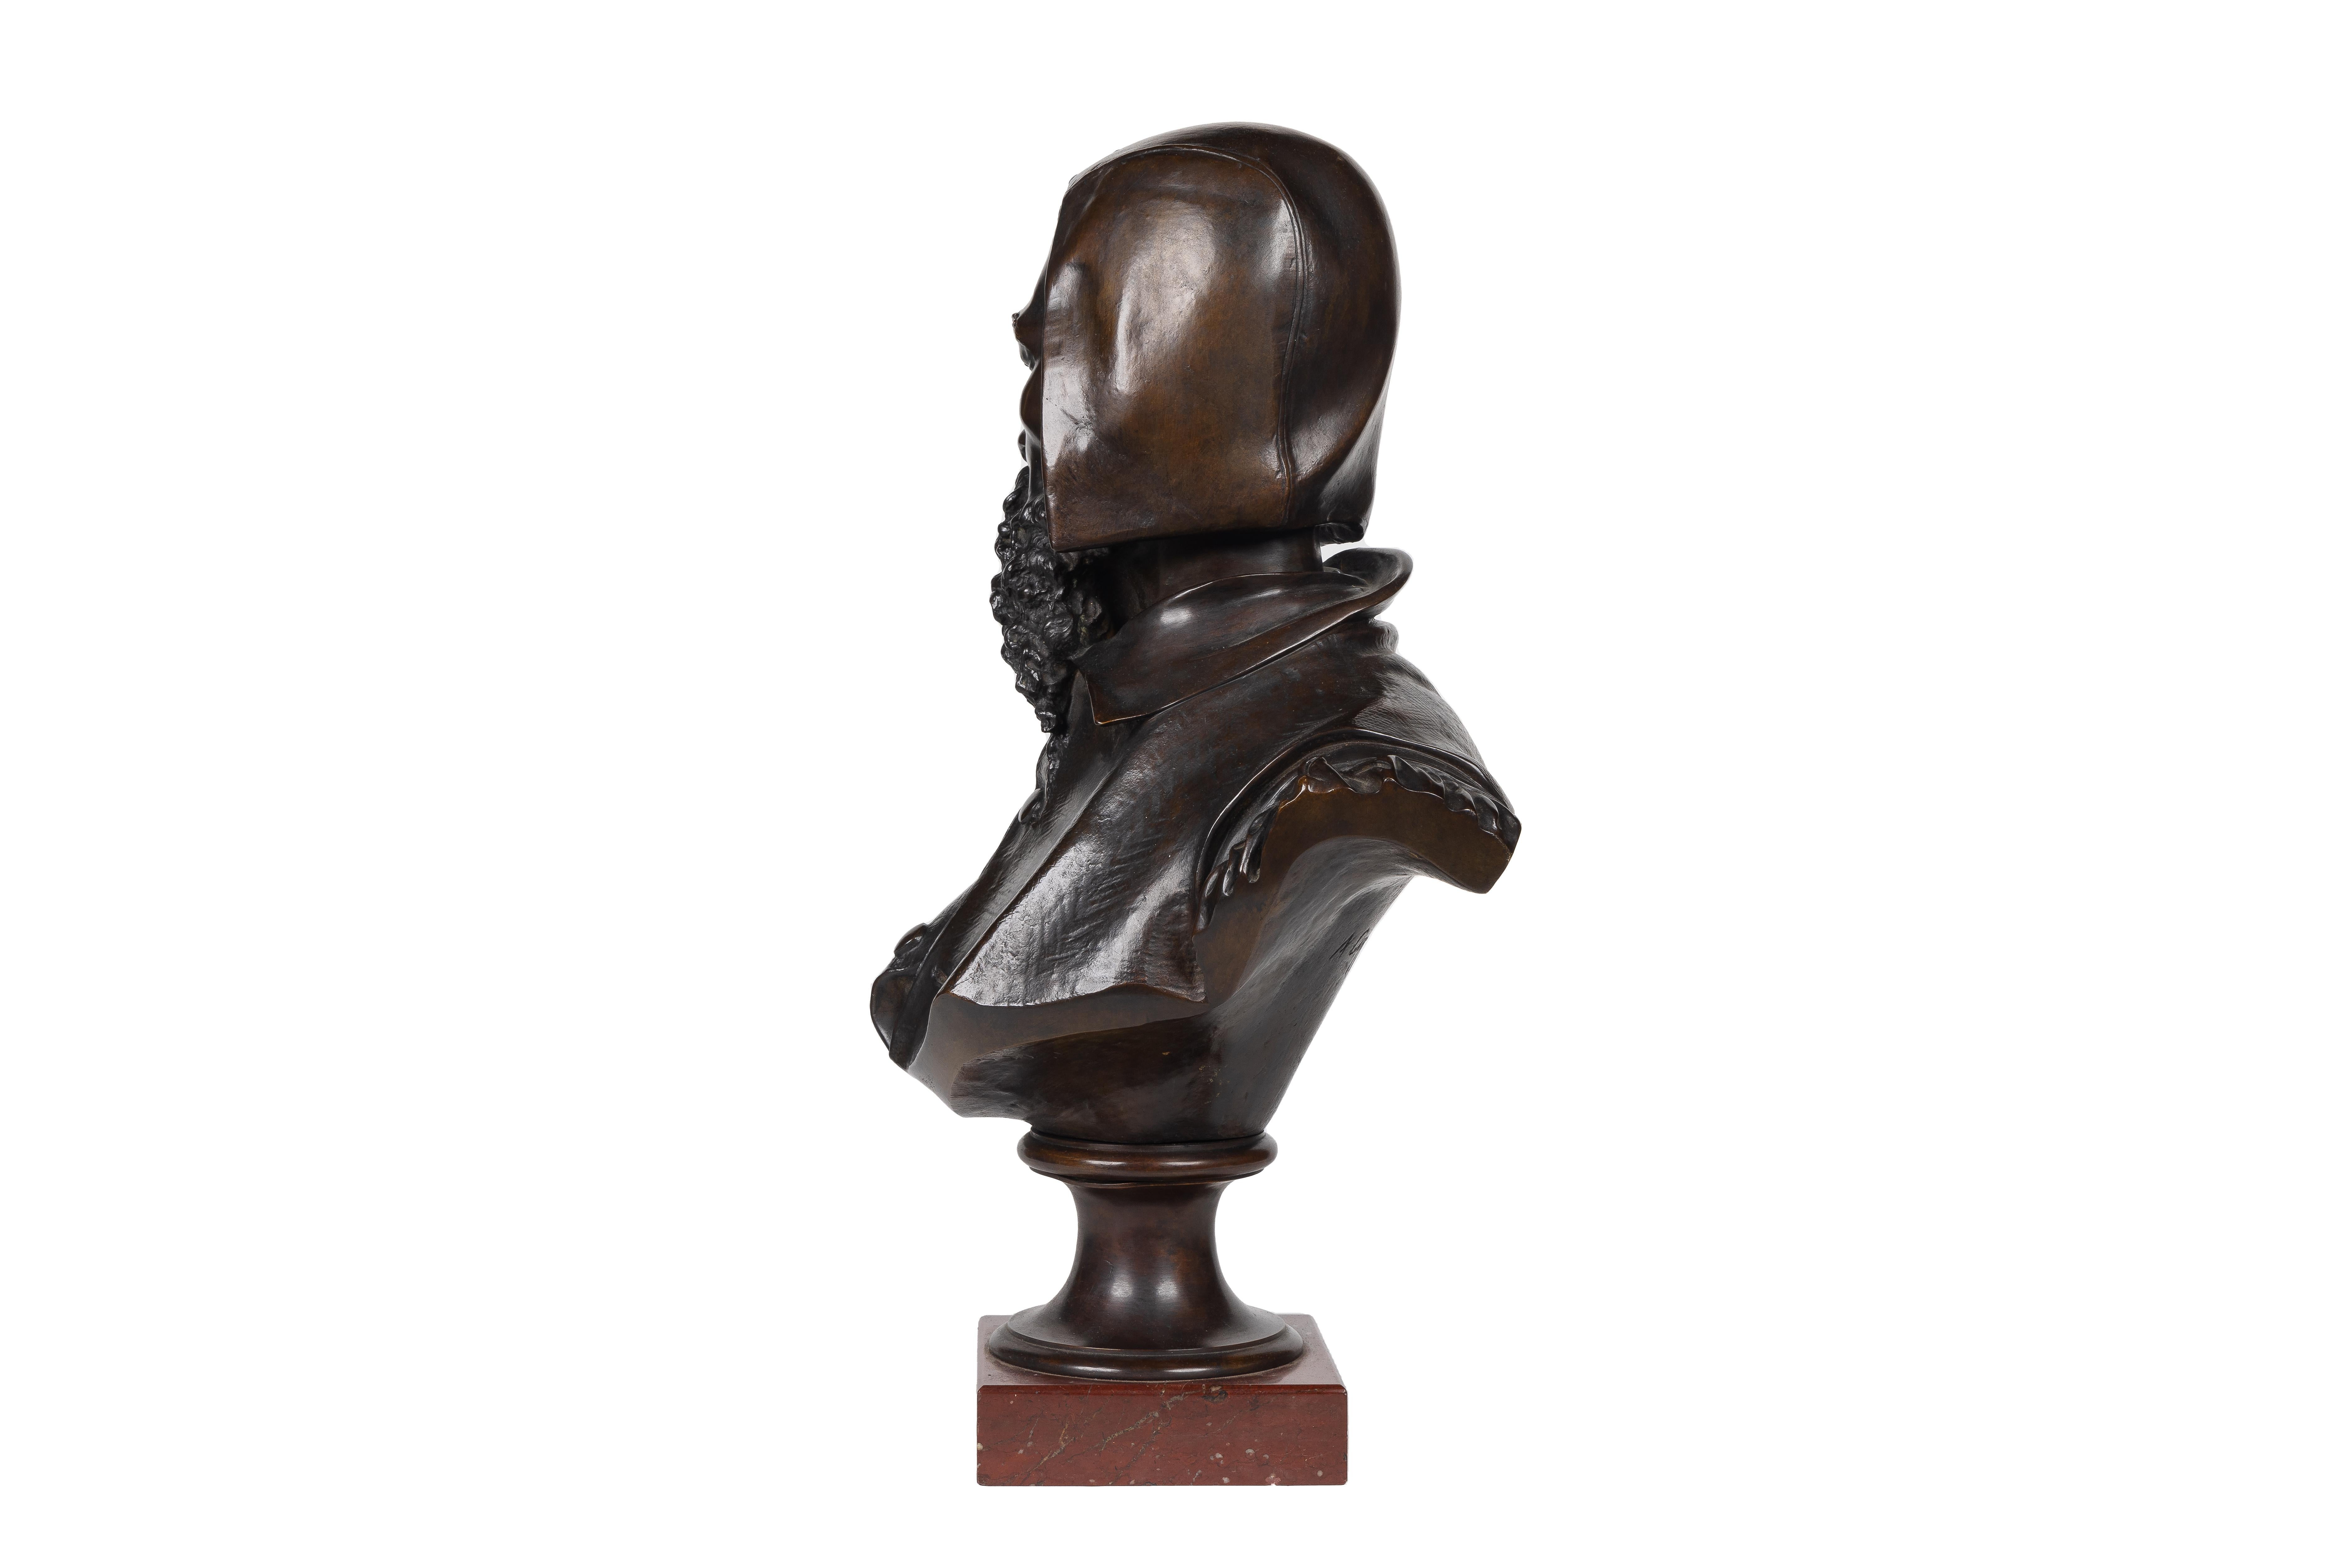 Albert-Ernest Carrier-Belleuse, (1824 1887)

Rare et important buste de Michelangelo en bronze patiné sur une base en marbre rouge.

Présentant un chef-d'œuvre extraordinaire et hautement collectionnable, ce rare et important buste en bronze patiné